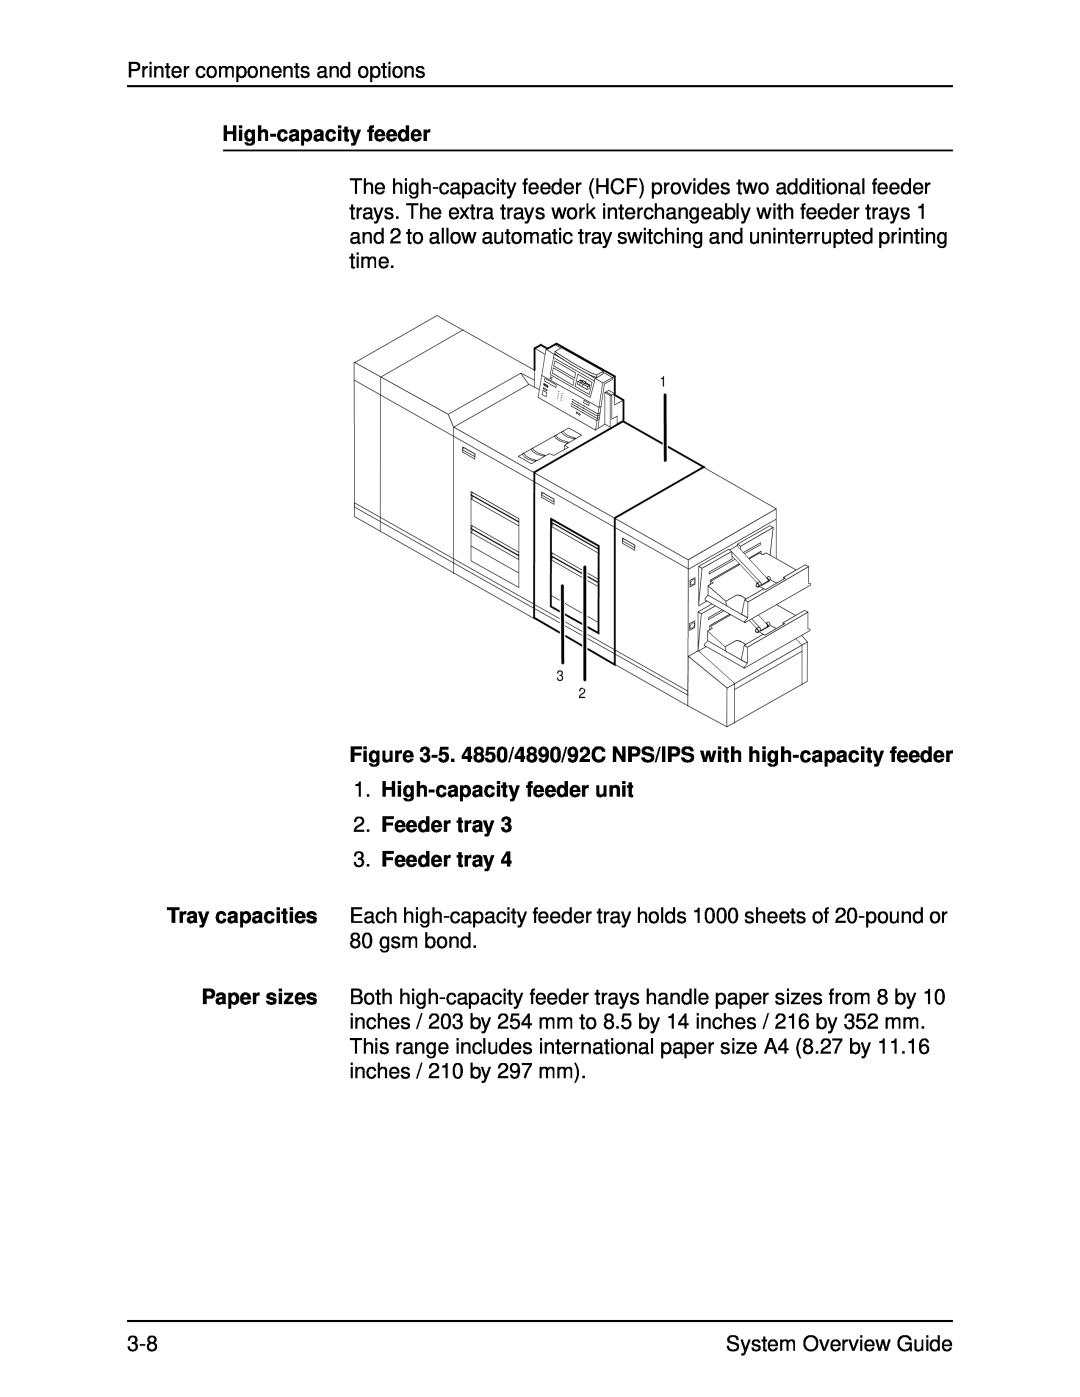 Xerox 92C, IPS, NPS, 4890, 4850 manual High-capacityfeeder unit 2.Feeder tray 